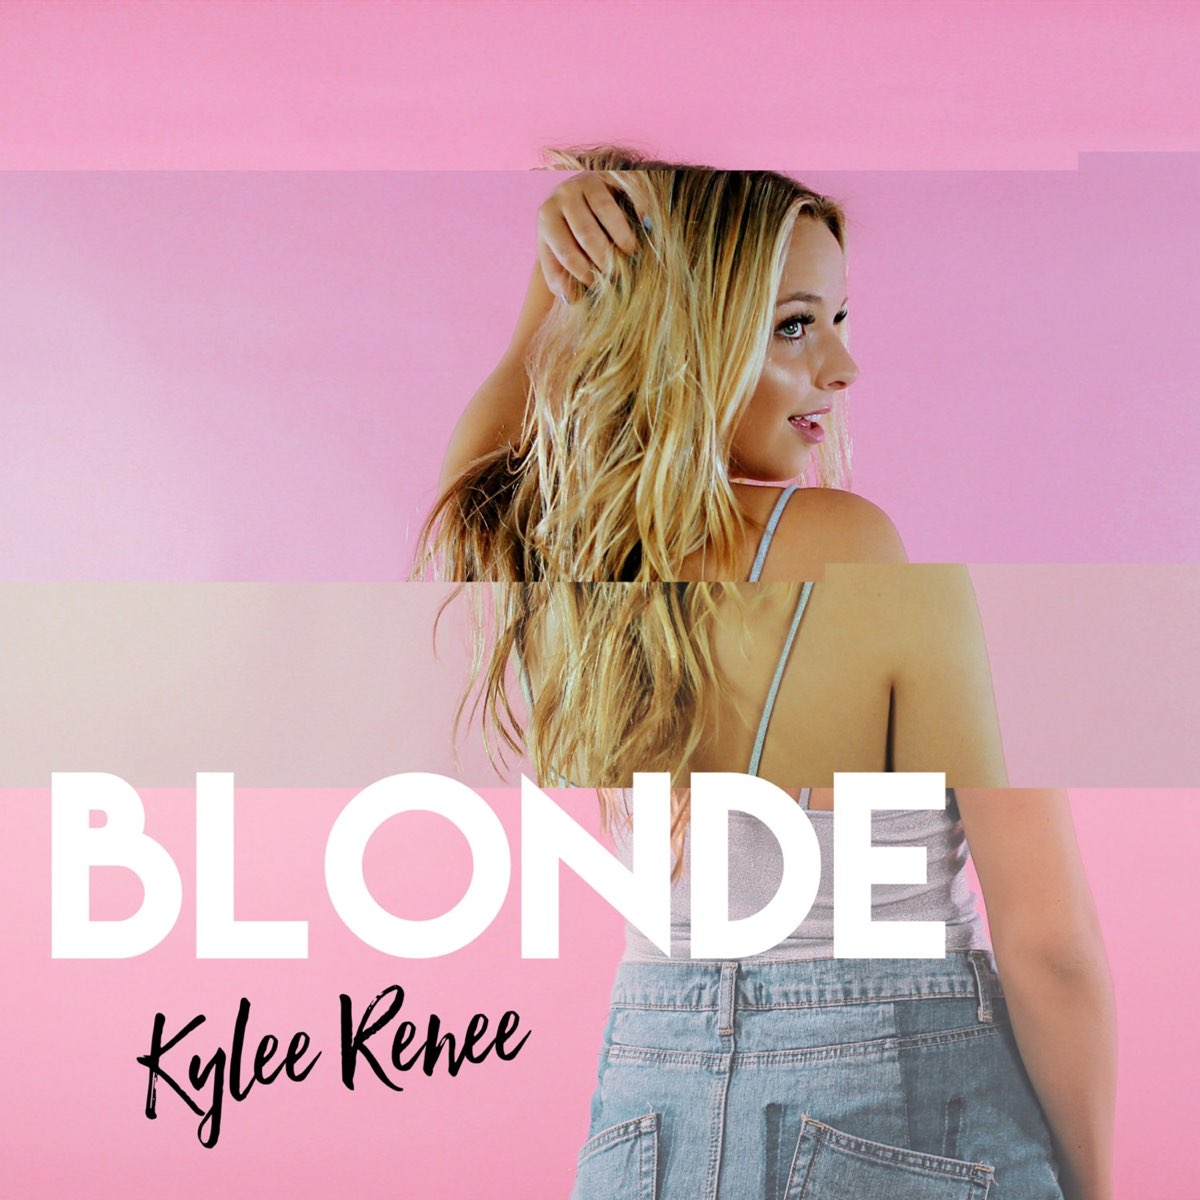 Blonde альбом. Песни блондинок. Blondie альбомы. Блондинка песня.